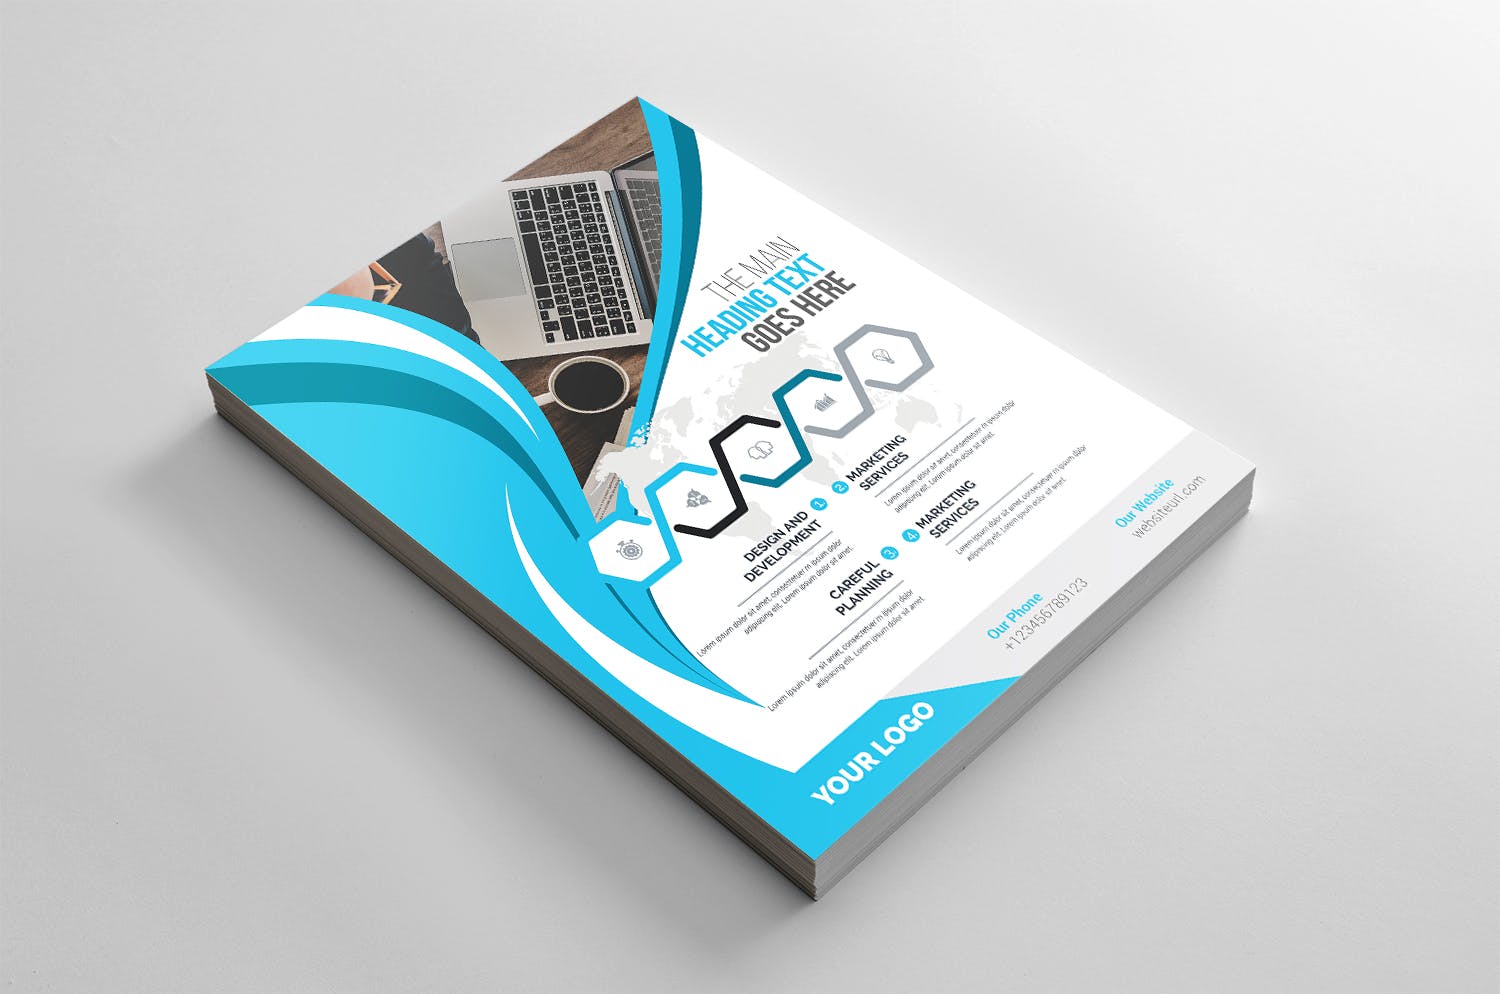 企业介绍&公司宣传商业传单设计模板 Corporate Flyer插图(1)